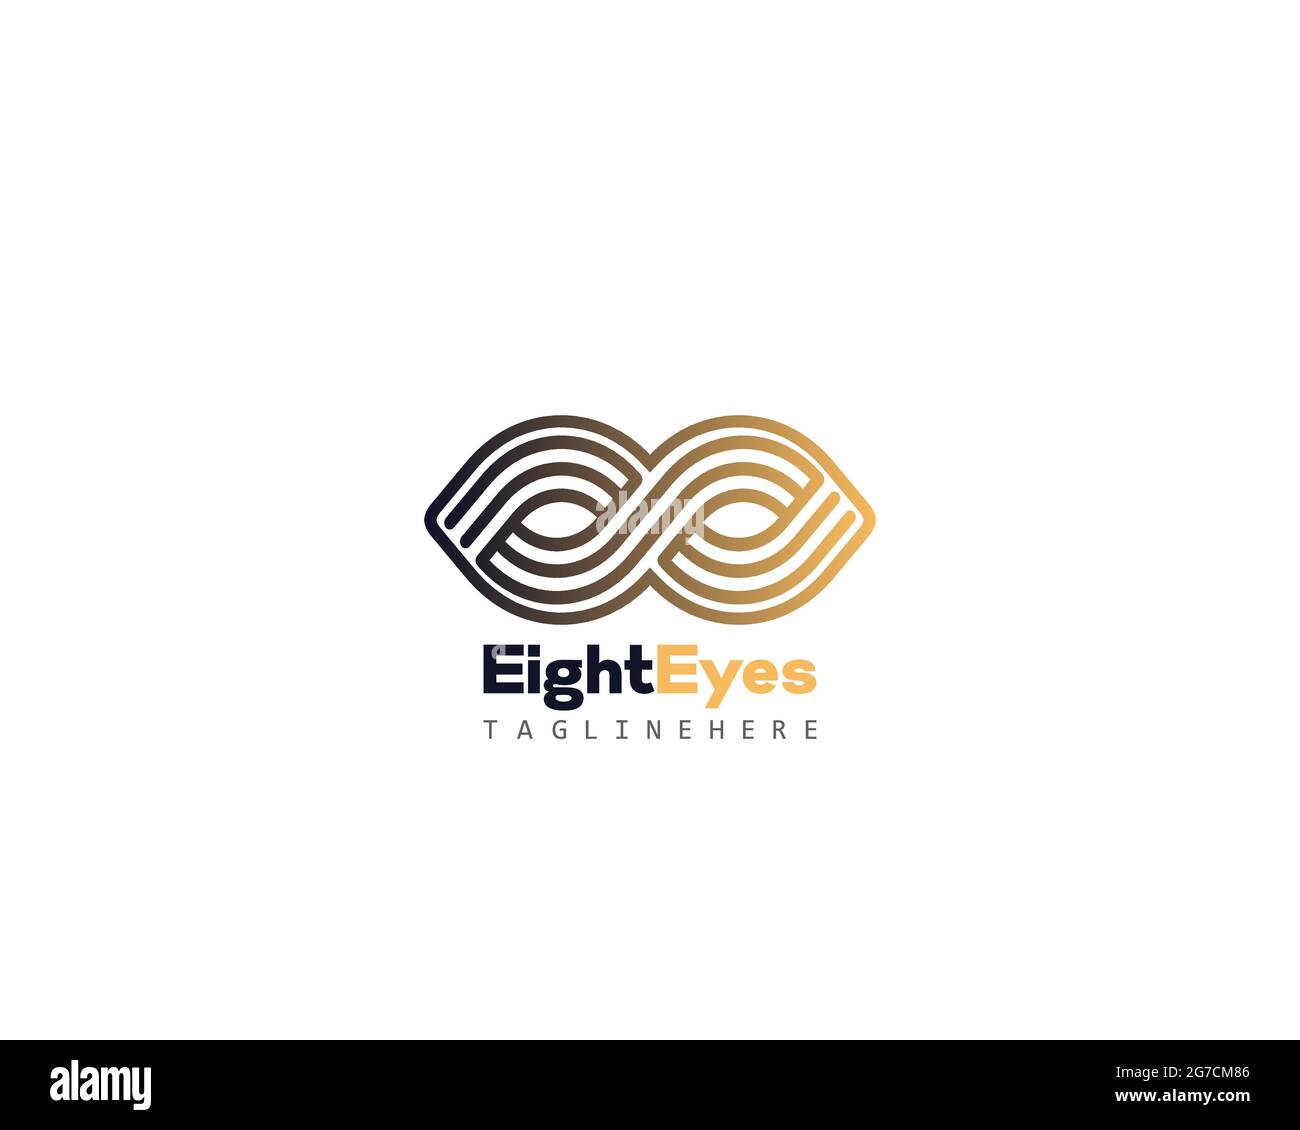 Il logo Infinity Eye può essere utilizzato come segno, icona o simbolo, vettore a strati completi e facile da modificare e personalizzare dimensioni e colori, compatibile con gli allmos Illustrazione Vettoriale